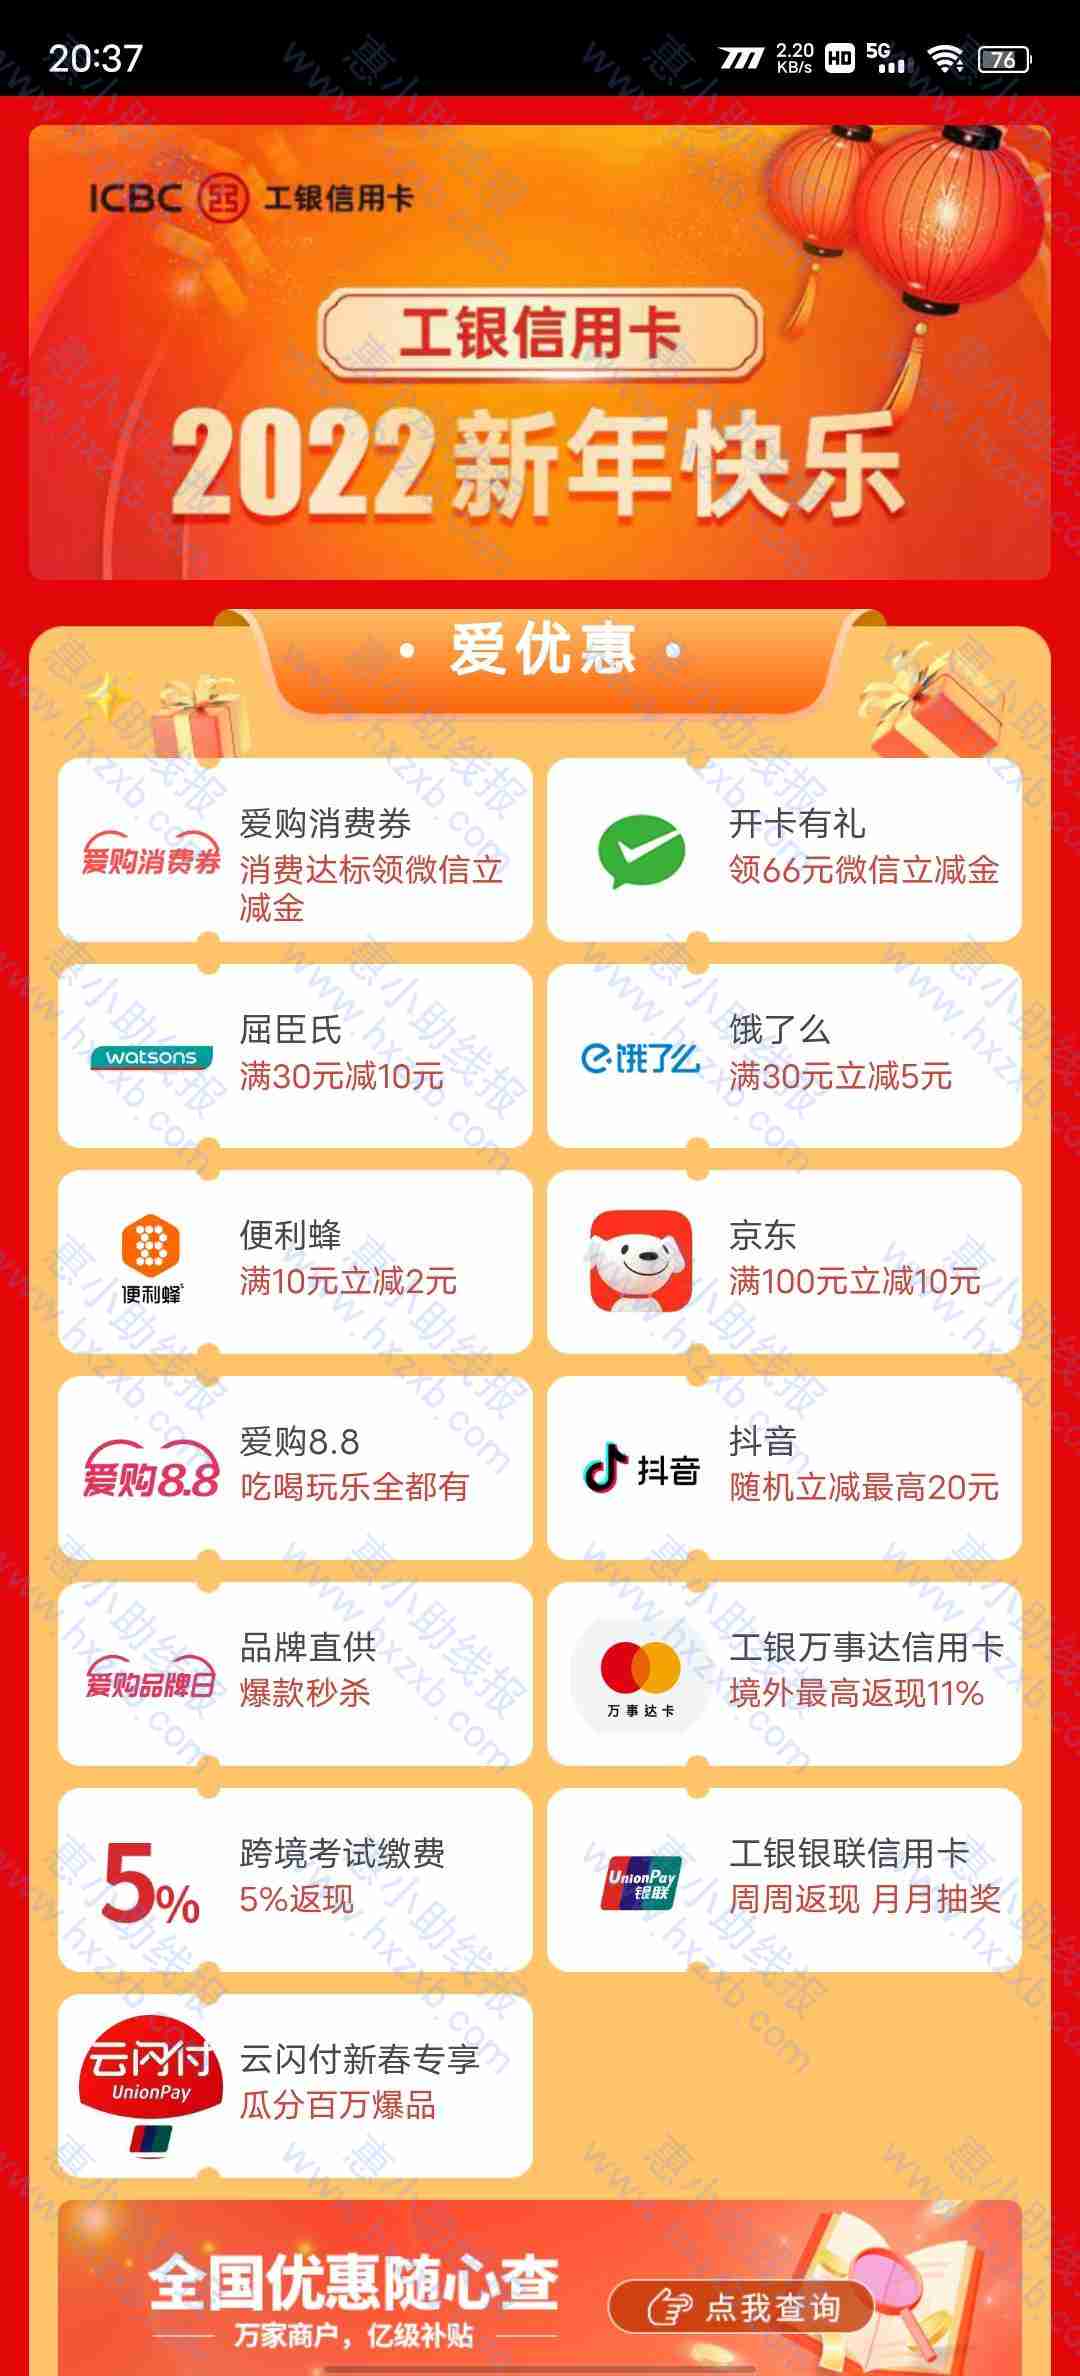 广东省工商开信用卡领66立减金